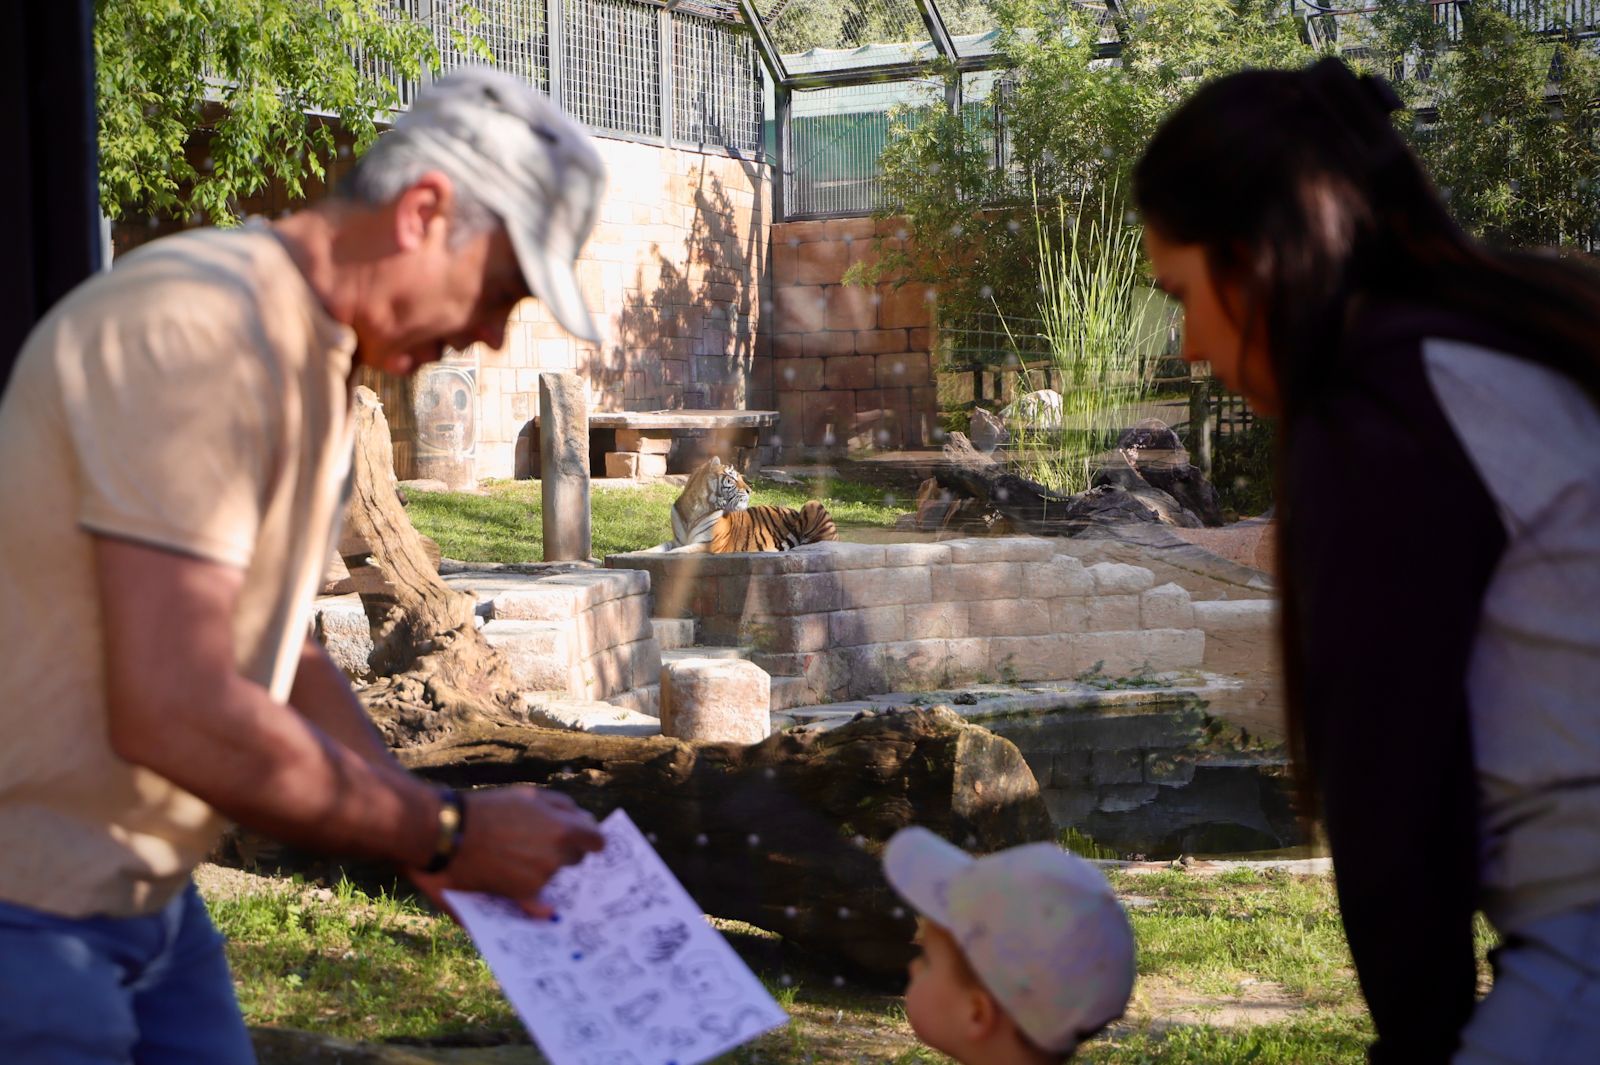 Dos tigres de bengala, nuevos inquilinos en el Zoo de Córdoba